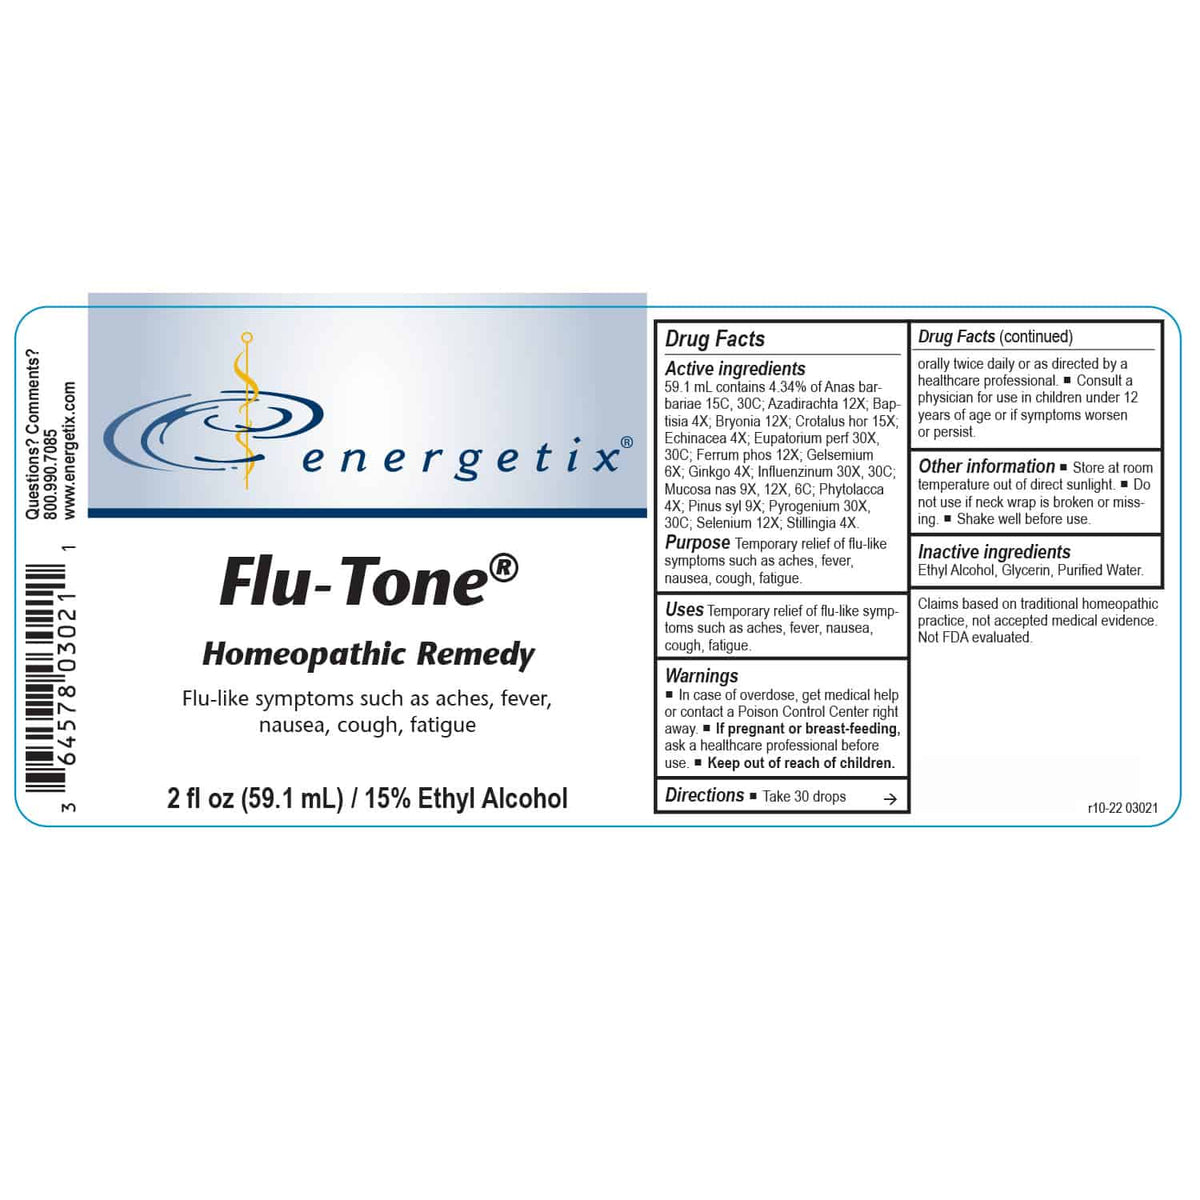 Flu-Tone